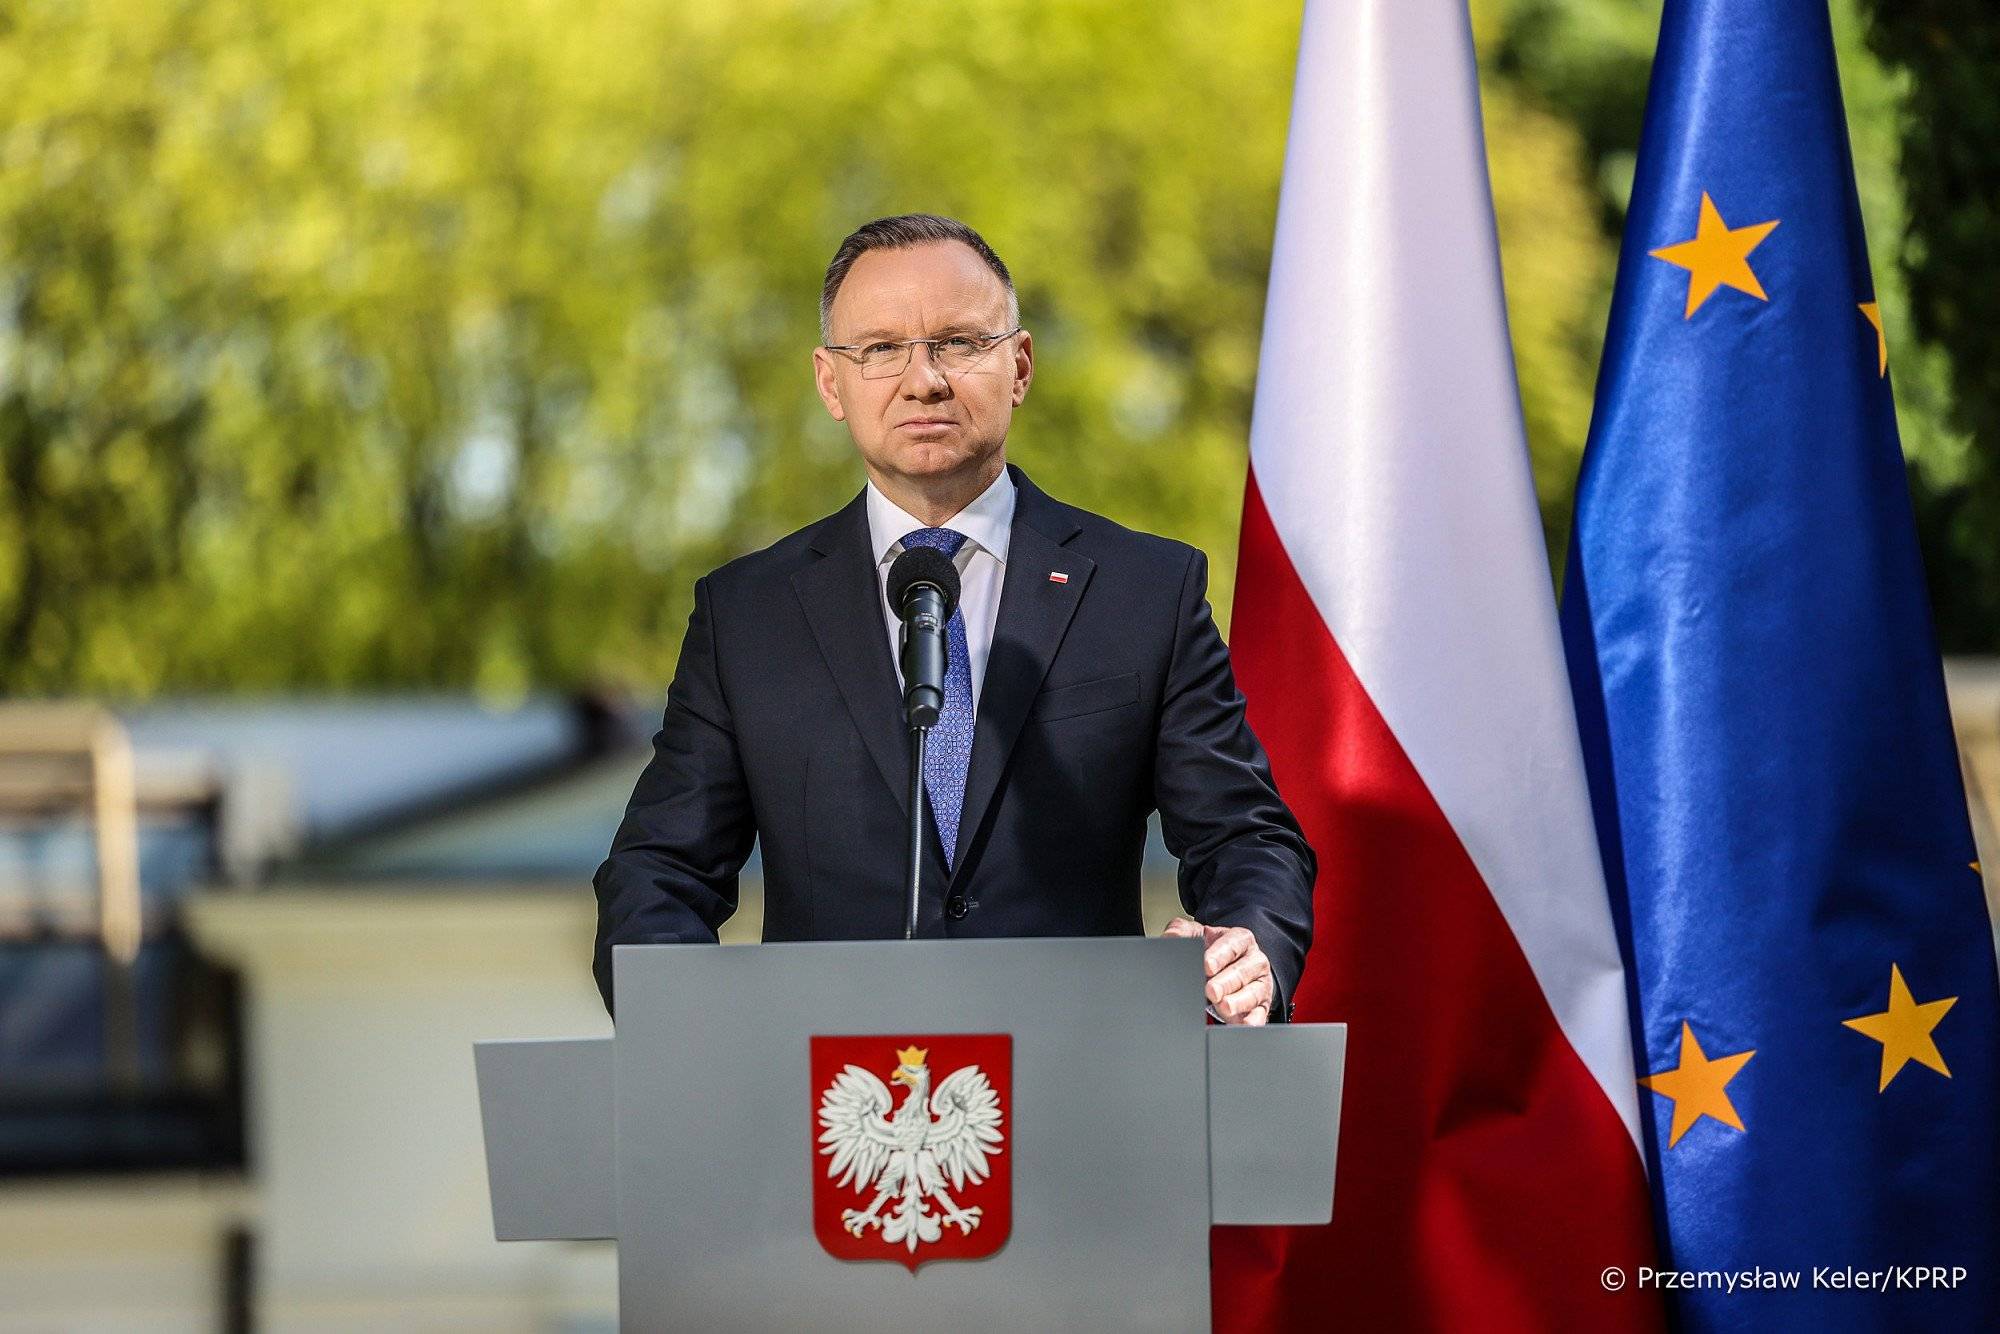 Mężczyzna w czarnym garniturze z niebieskim krawatem stoi przy szarej mównicy z godłem Polski, w tle ogród i zielone drzewa, a po jego lewej stronie flaga Polski i flaga UE.